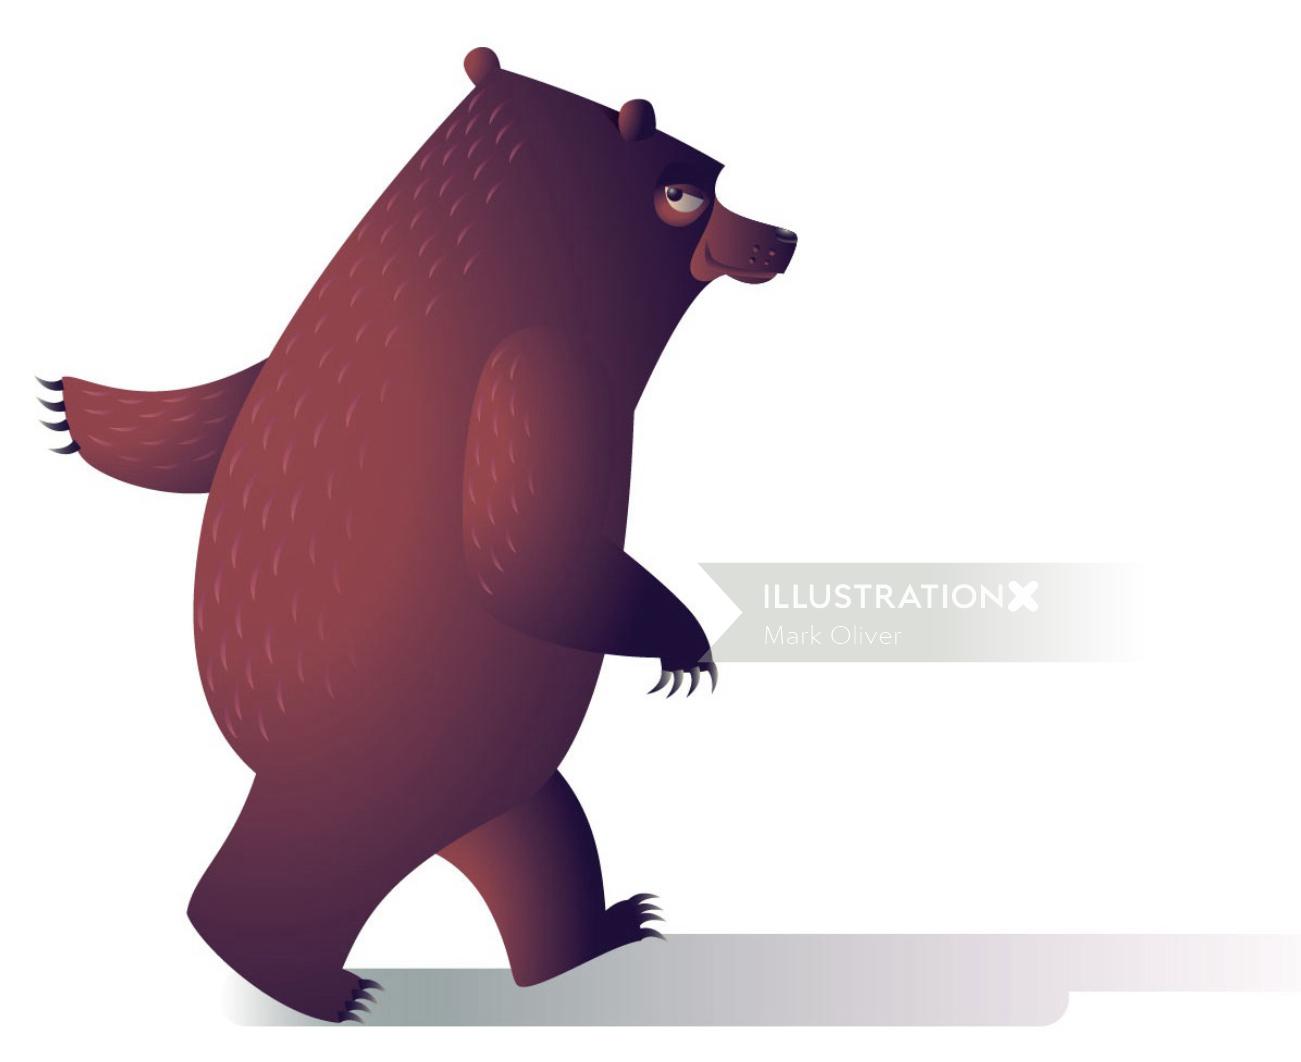 digital illustration of a walking bear